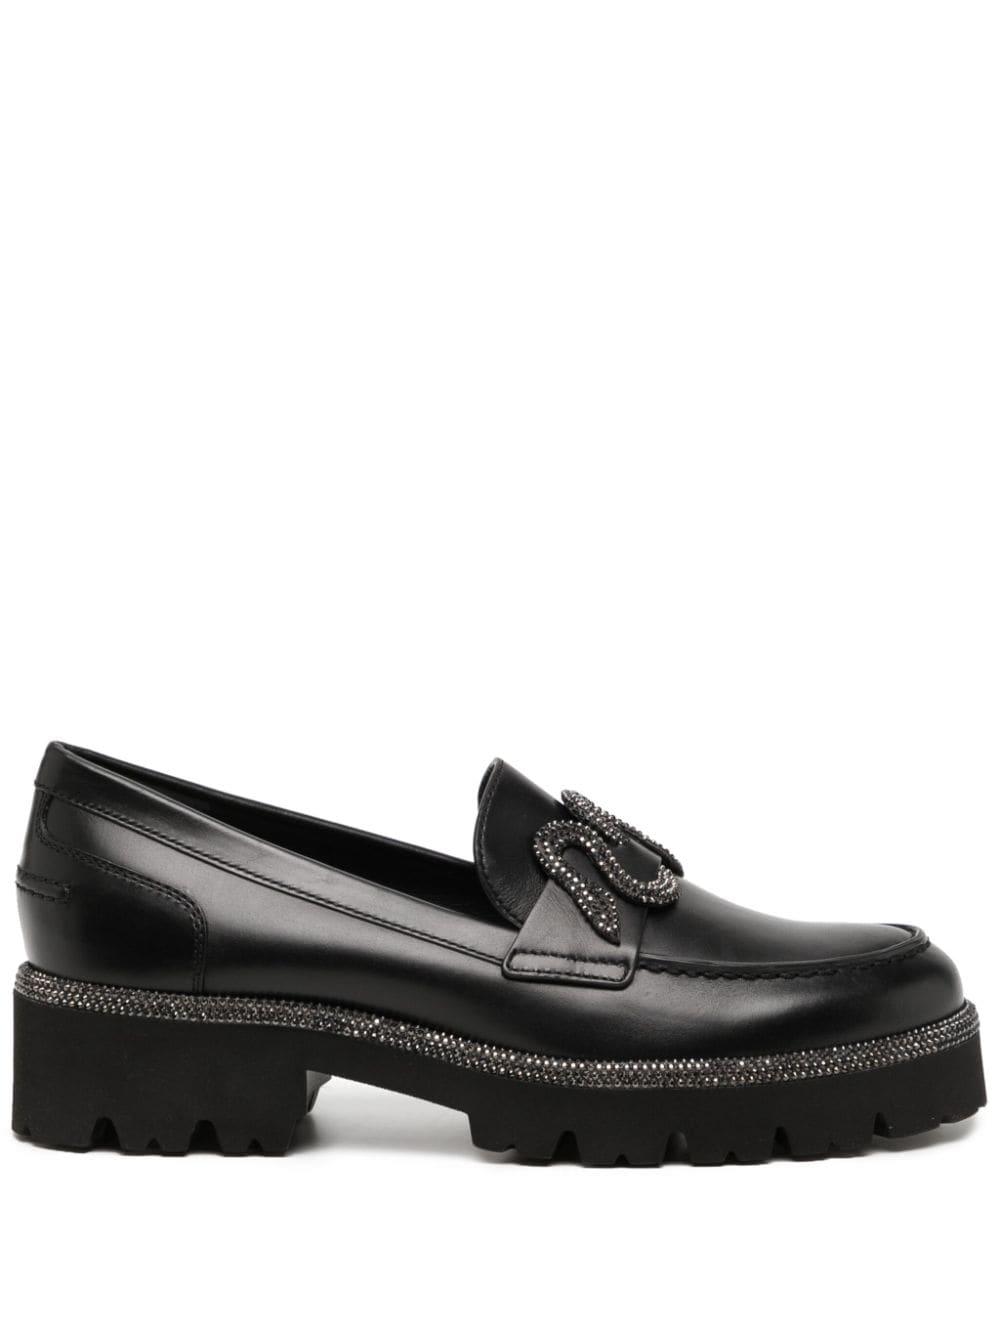 René Caovilla Morgana 40mm leather loafers - Black von René Caovilla